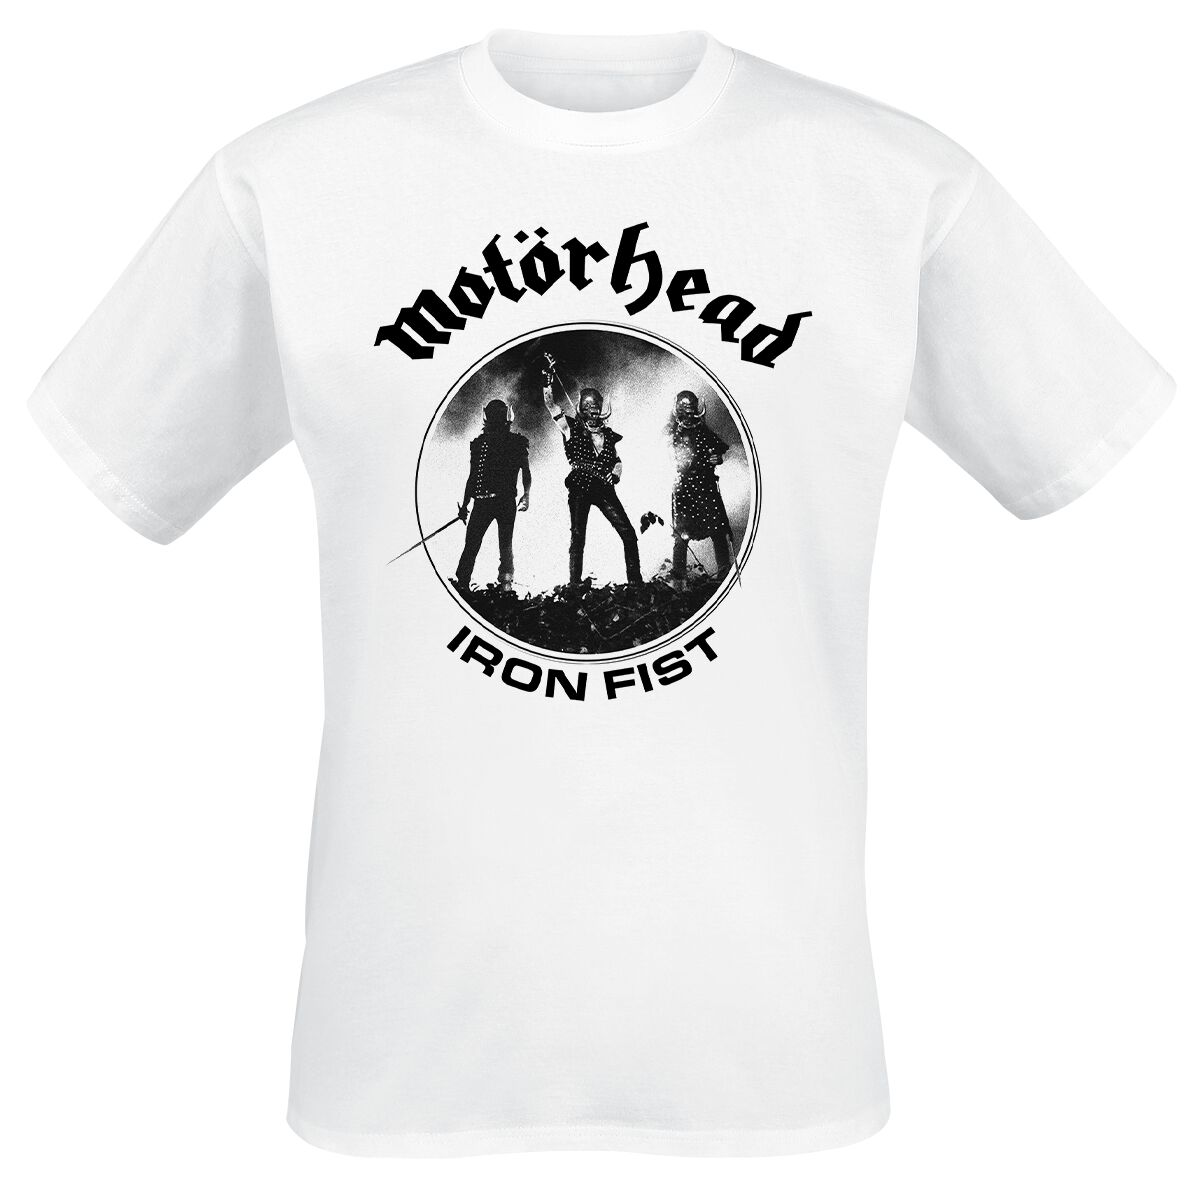 T-Shirt Manches courtes de Motörhead - Live Photo Iron Fist - S à 4XL - pour Homme - blanc